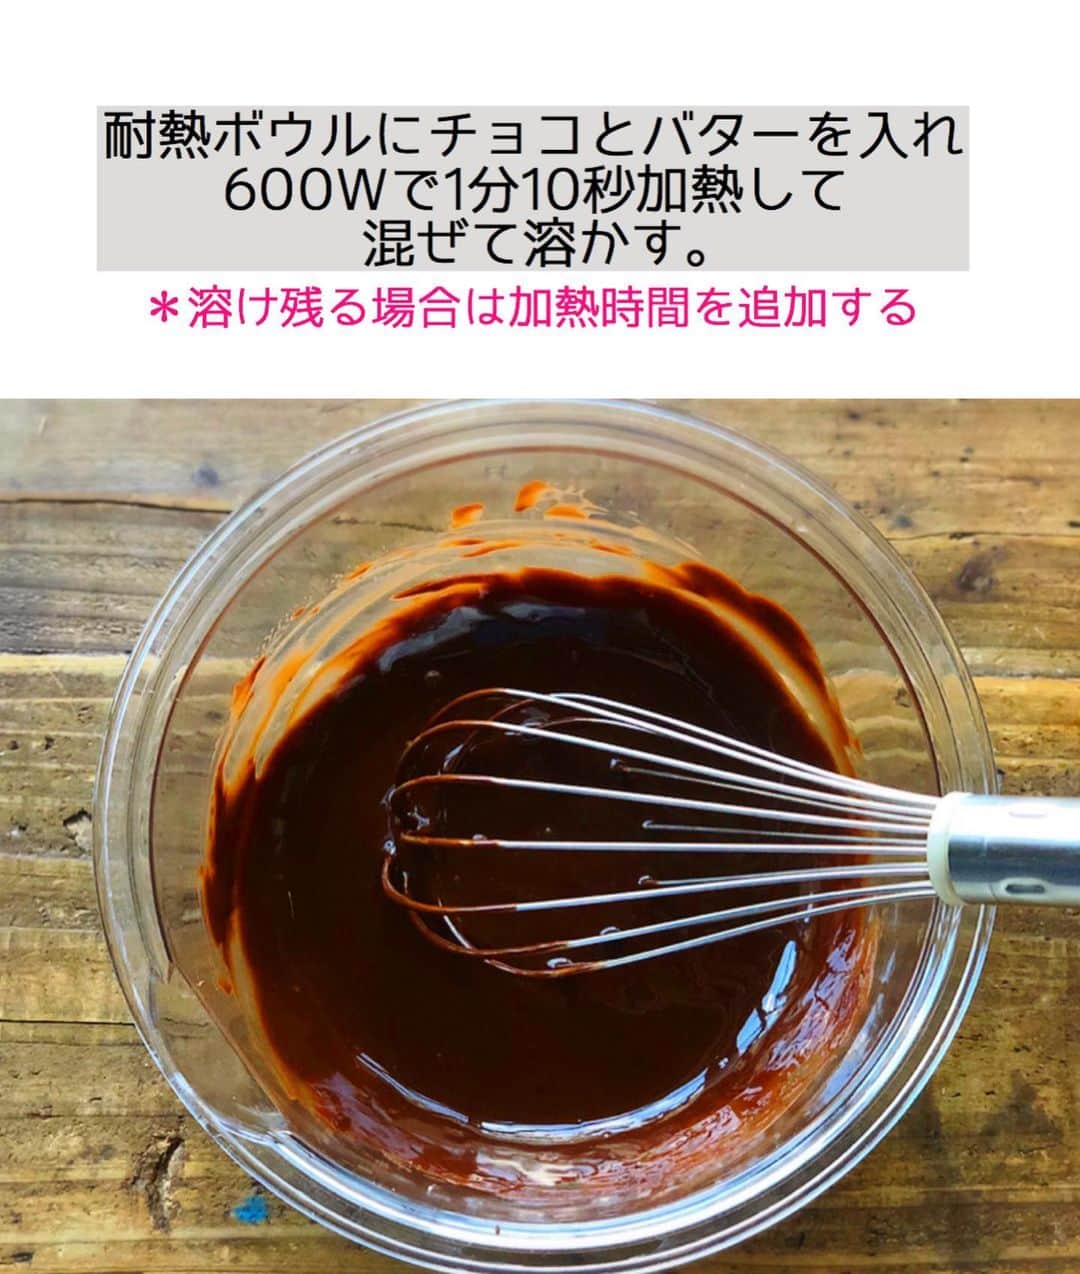 Mizuki【料理ブロガー・簡単レシピ】さんのインスタグラム写真 - (Mizuki【料理ブロガー・簡単レシピ】Instagram)「・﻿ 【#レシピ 】ーーーーーーーー﻿ ♡しっとり濃厚ブラウニー♡﻿ ーーーーーーーーーーーーーー﻿ ﻿ ﻿ ﻿ おはようございます(*^^*)﻿ ﻿ 今日はバレンタインにもおすすめの﻿ \ 濃厚ブラウニー / のご紹介です♩﻿ ﻿ チョコをたっぷり加えた生地は﻿ しっとり濃厚♡♡﻿ クルミが食感と味わいの﻿ アクセントになりますよ〜♩﻿ ﻿ 生地は混ぜるだけ！の﻿ 超簡単レシピです(*´艸`)﻿ 日持ちして持ち運びしやすいので﻿ よかったらお試し下さいね(*^^*)﻿ ﻿ ＊)バターは有塩でも無塩でもOK！﻿ ＊)チョコはブラックでもミルクでもOK！﻿ ﻿ ﻿ ﻿ ＿＿＿＿＿＿＿＿＿＿＿＿＿＿＿＿＿＿＿＿﻿ 【15cmスクエア型】﻿ 板チョコ...3枚(150g)﻿ バター...50g﻿ 卵...2個﻿ 牛乳...大1﻿ ●薄力粉...50g﻿ ●ココアパウダー...10g﻿ クルミ...50g﻿ ﻿ (準備)型にシートを敷く。オーブンを180度に予熱する。チョコとバターは細かく切る。●は合わせてふるう。﻿ 1.耐熱ボウルにチョコとバターを入れ、600Wのレンジで1分30秒加熱して混ぜて溶かす。﻿ 2.卵、牛乳の順に加えて手早く混ぜ、最後に●を加えてさっくり混ぜる。﻿ 3.型に注いでクルミをのせ、予熱したオーブンで20分焼く。焼けたら型から取り出し、網にのせて冷ます。﻿ ￣￣￣￣￣￣￣￣￣￣￣￣￣￣￣￣￣￣￣￣﻿ ﻿ ﻿ ﻿ 《ポイント》﻿ ♦︎バターは有塩でも無塩でもどちらでもOK！﻿ ♦︎私はブラックチョコレートを使用しています♩ミルクチョコでも作れます♩﻿ ♦︎チョコが溶け残る場合はレンジの加熱時間を追加して下さい♩﻿ ♦︎一晩以上寝かせるとしっとり美味しくなります♩﻿ ♦︎常温で4日程日持ちします♩﻿ ﻿ ﻿ ﻿ ﻿ ﻿ ﻿ ﻿ ﻿ ﻿ ﻿ 📕新刊発売中📕﻿ 【ラクしておいしい！#1品晩ごはん 】﻿ ￣￣￣￣￣￣￣￣￣￣￣￣￣￣￣￣￣﻿ 私たちだってヘトヘトな日がある•••﻿ 毎日何品も作っていられない•••﻿ もうごはんに悩みたくない😢﻿ そんな時、1品ごはんはいかがでしょう？﻿ というご提案です✨﻿ ﻿ 【1品ごはん】は﻿ 副菜いらずで全てがシンプル！﻿ ￣￣￣￣￣￣￣￣￣￣￣￣￣￣￣￣￣￣﻿ 一品つくるだけでいいから﻿ 献立を考えなくてよし！﻿ ￣￣￣￣￣￣￣￣￣￣￣￣￣￣￣￣￣￣﻿ 悩まない、疲れない、﻿ 気力や時間がなくてもなんとかなる！﻿ ￣￣￣￣￣￣￣￣￣￣￣￣￣￣￣￣￣￣﻿ そんな頼りになる﻿ 便利なお助けごはんです☺️💕﻿ (ハイライトに🔗貼っています✨)﻿ ￣￣￣￣￣￣￣￣￣￣￣￣￣￣￣￣￣﻿ ﻿ ﻿ ﻿ ﻿ ﻿ ⭐️発売中⭐️﻿ ＿＿＿＿＿＿＿＿＿＿＿＿＿＿＿＿＿＿﻿ しんどくない献立、考えました♩﻿ \15分でいただきます/﻿ 📕#Mizukiの2品献立 📕﻿ ﻿ 和食をもっとカジュアルに♩﻿ \毎日のごはんがラクになる/﻿ 📘#Mizukiの今どき和食 📘﻿ ﻿ ホケミレシピの決定版♩﻿ \はじめてでも失敗しない/﻿ 📙ホットケーキミックスのお菓子 📙﻿ ﻿ NHKまる得マガジンテキスト☆﻿ ホットケーキミックスで﻿ 📗絶品おやつ&意外なランチ📗﻿ ￣￣￣￣￣￣￣￣￣￣￣￣￣￣￣￣￣￣﻿ ﻿ ﻿ ﻿ ＿＿＿＿＿＿＿＿＿＿＿＿＿＿＿＿＿＿﻿ レシピを作って下さった際や﻿ レシピ本についてのご投稿には﻿ タグ付け( @mizuki_31cafe )して﻿ お知らせいただけると嬉しいです😊💕﻿ ￣￣￣￣￣￣￣￣￣￣￣￣￣￣￣￣￣￣﻿ ﻿ ﻿ ﻿ ﻿ #ブラウニー#バレンタイン#バレンタインレシピ#チョコレート#Mizuki#簡単レシピ#時短レシピ#節約レシピ#料理#フーディーテーブル#マカロニメイト#おうちごはん#デリスタグラマー#料理好きな人と繋がりたい#おうちごはんlover#写真好きな人と繋がりたい#foodpic#cooking#recipe#lin_stagrammer#foodporn#yummy#f52grams#濃厚ブラウニーm」1月18日 7時09分 - mizuki_31cafe